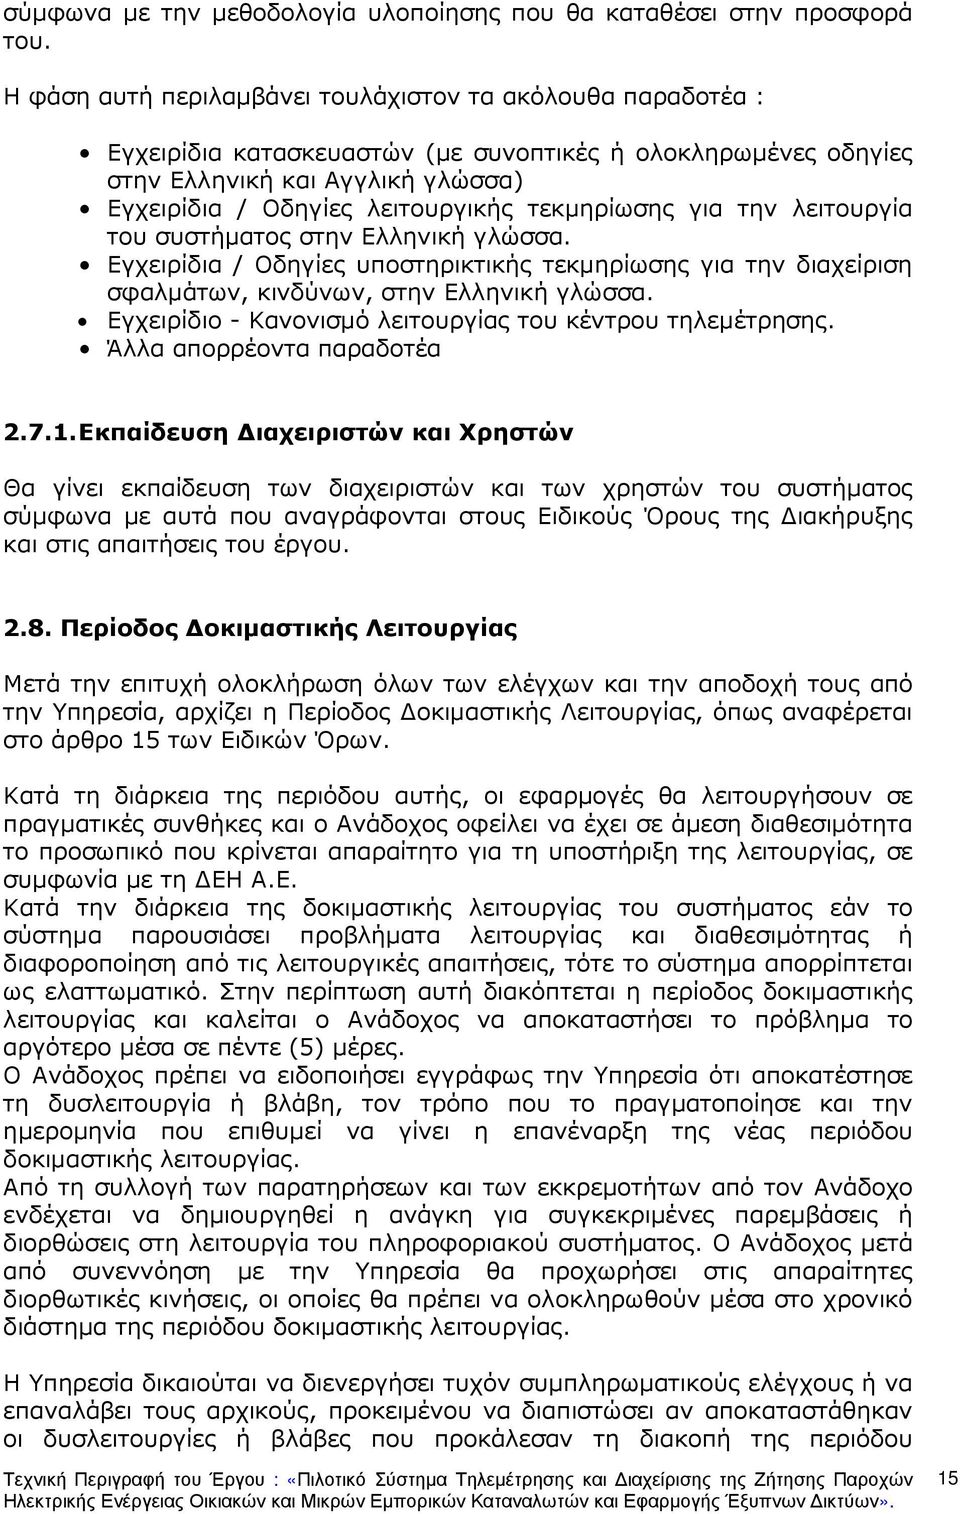 τεκµηρίωσης για την λειτουργία του συστήµατος στην Ελληνική γλώσσα. Εγχειρίδια / Οδηγίες υποστηρικτικής τεκµηρίωσης για την διαχείριση σφαλµάτων, κινδύνων, στην Ελληνική γλώσσα.